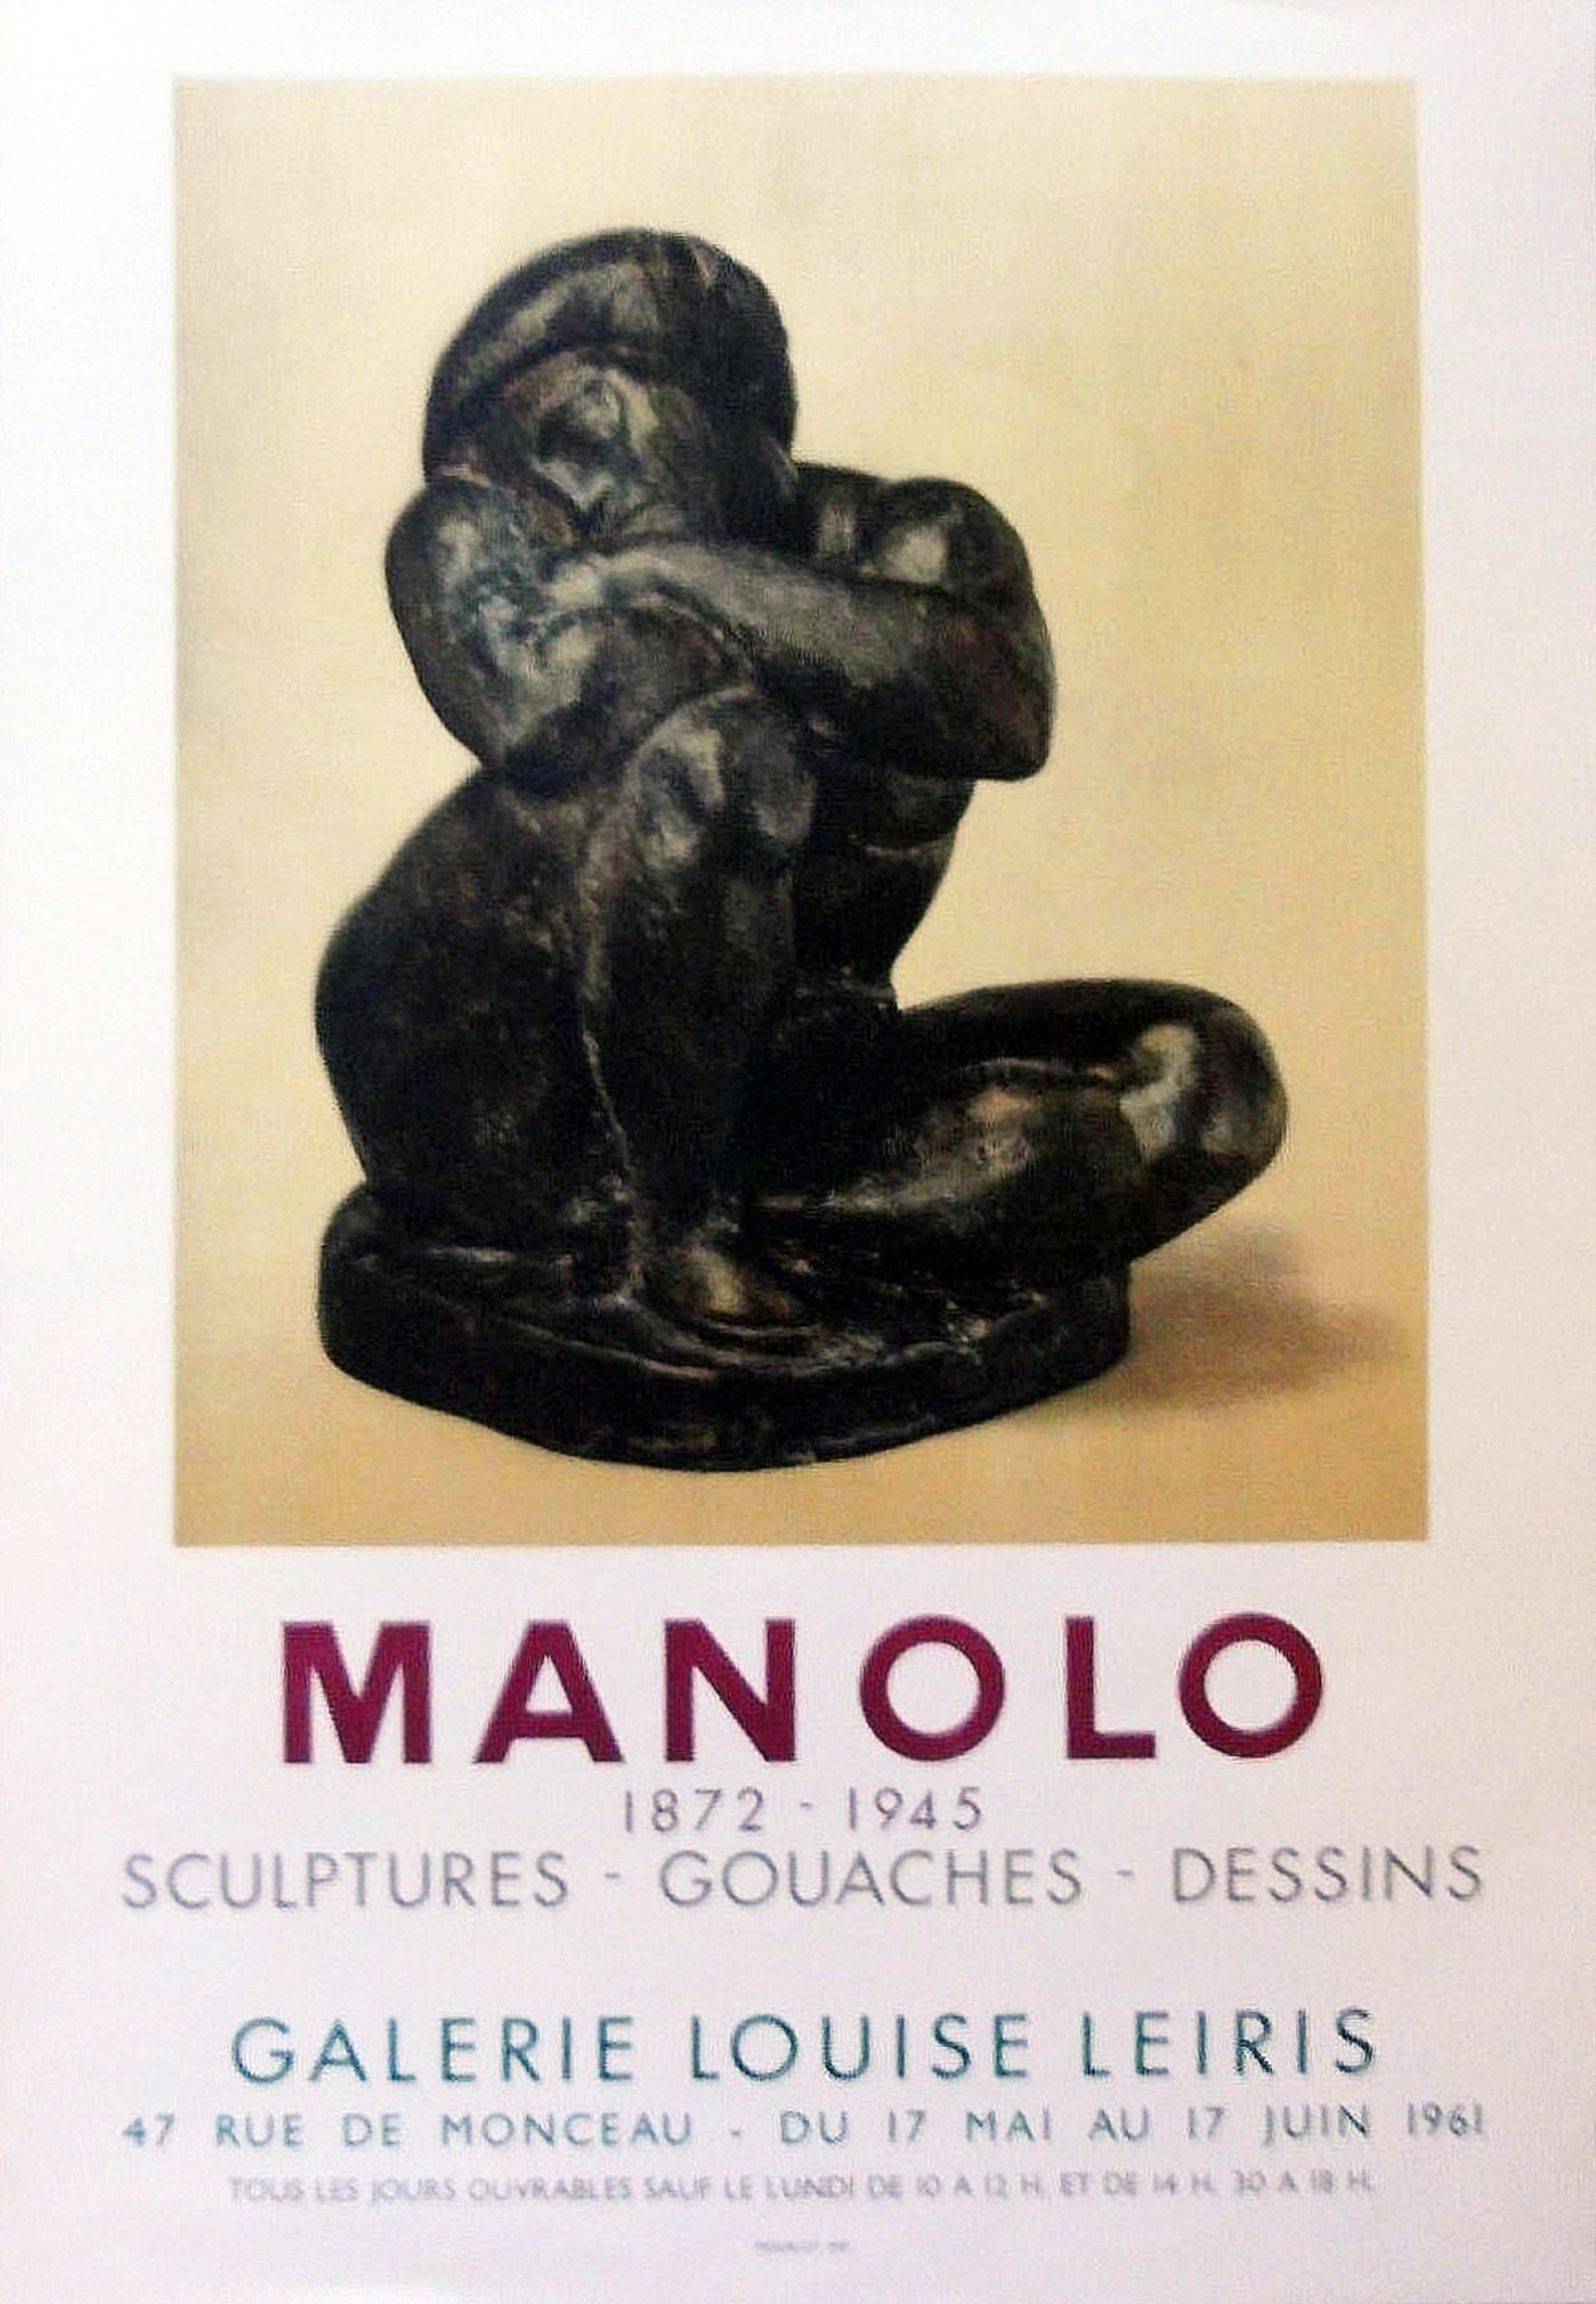 Manolo 1872-1945
Sculptures - Gouaches - Dessins